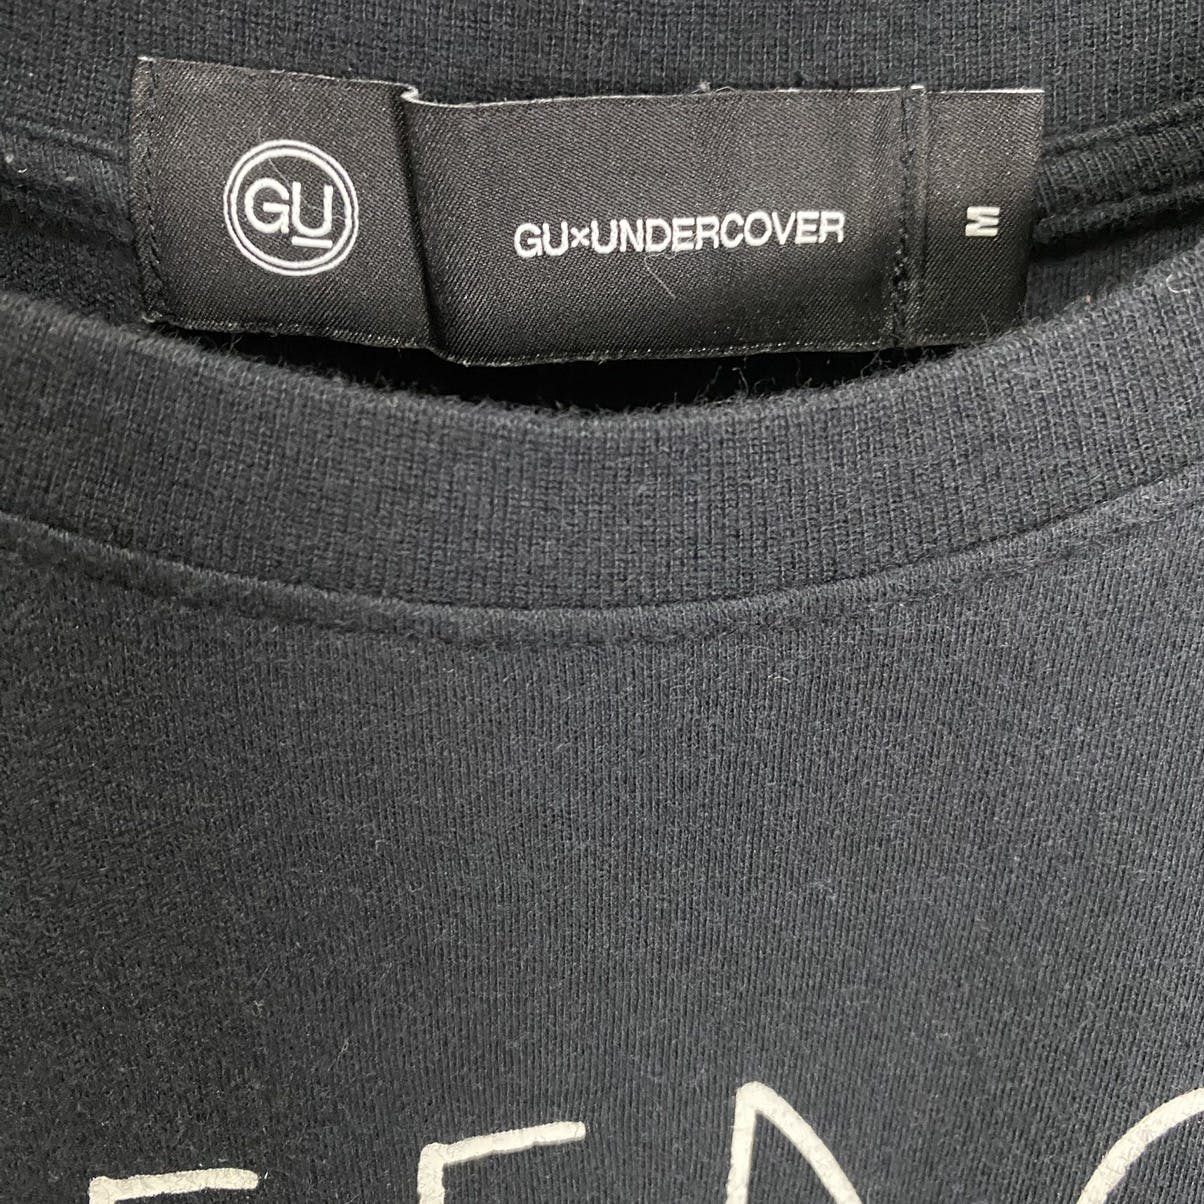 GU X Undercover maxi dress shirt - 14